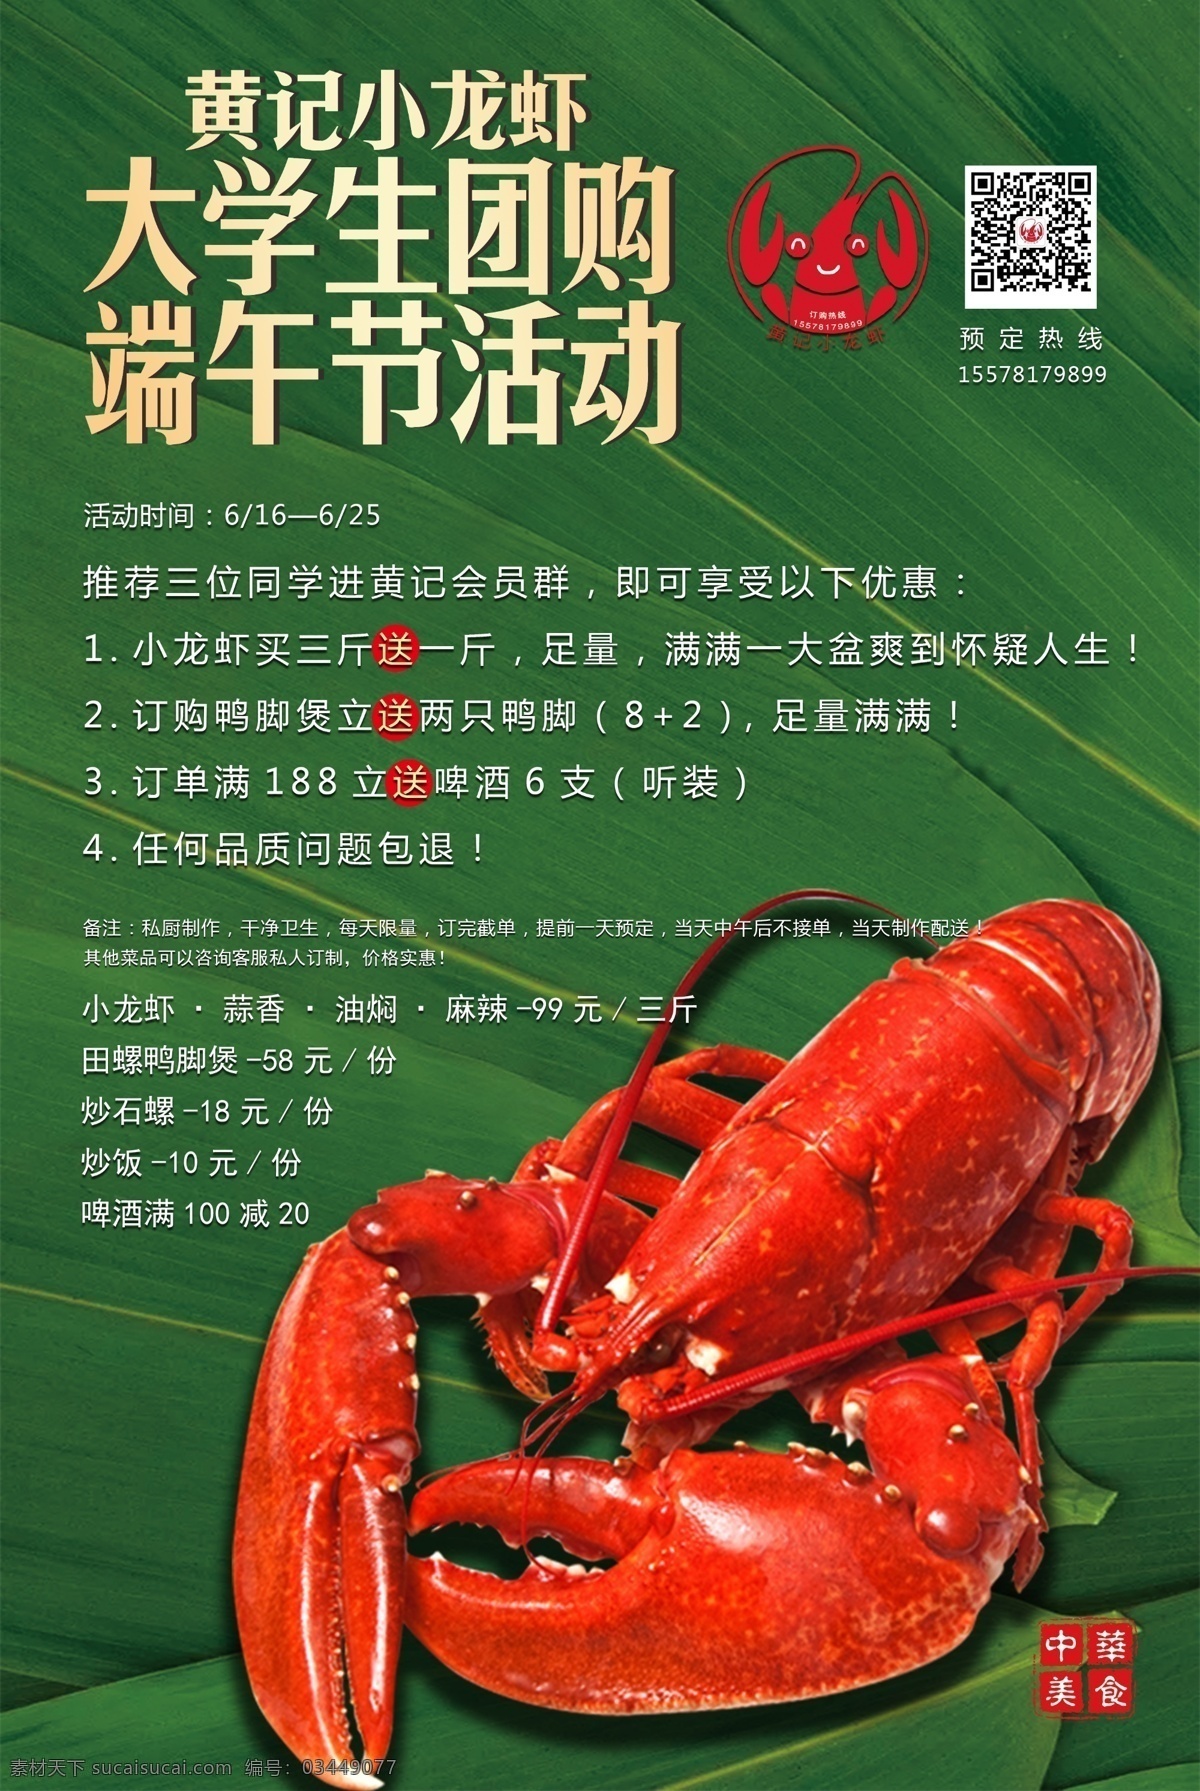 龙虾 端午 促销 团购 小龙虾 活动